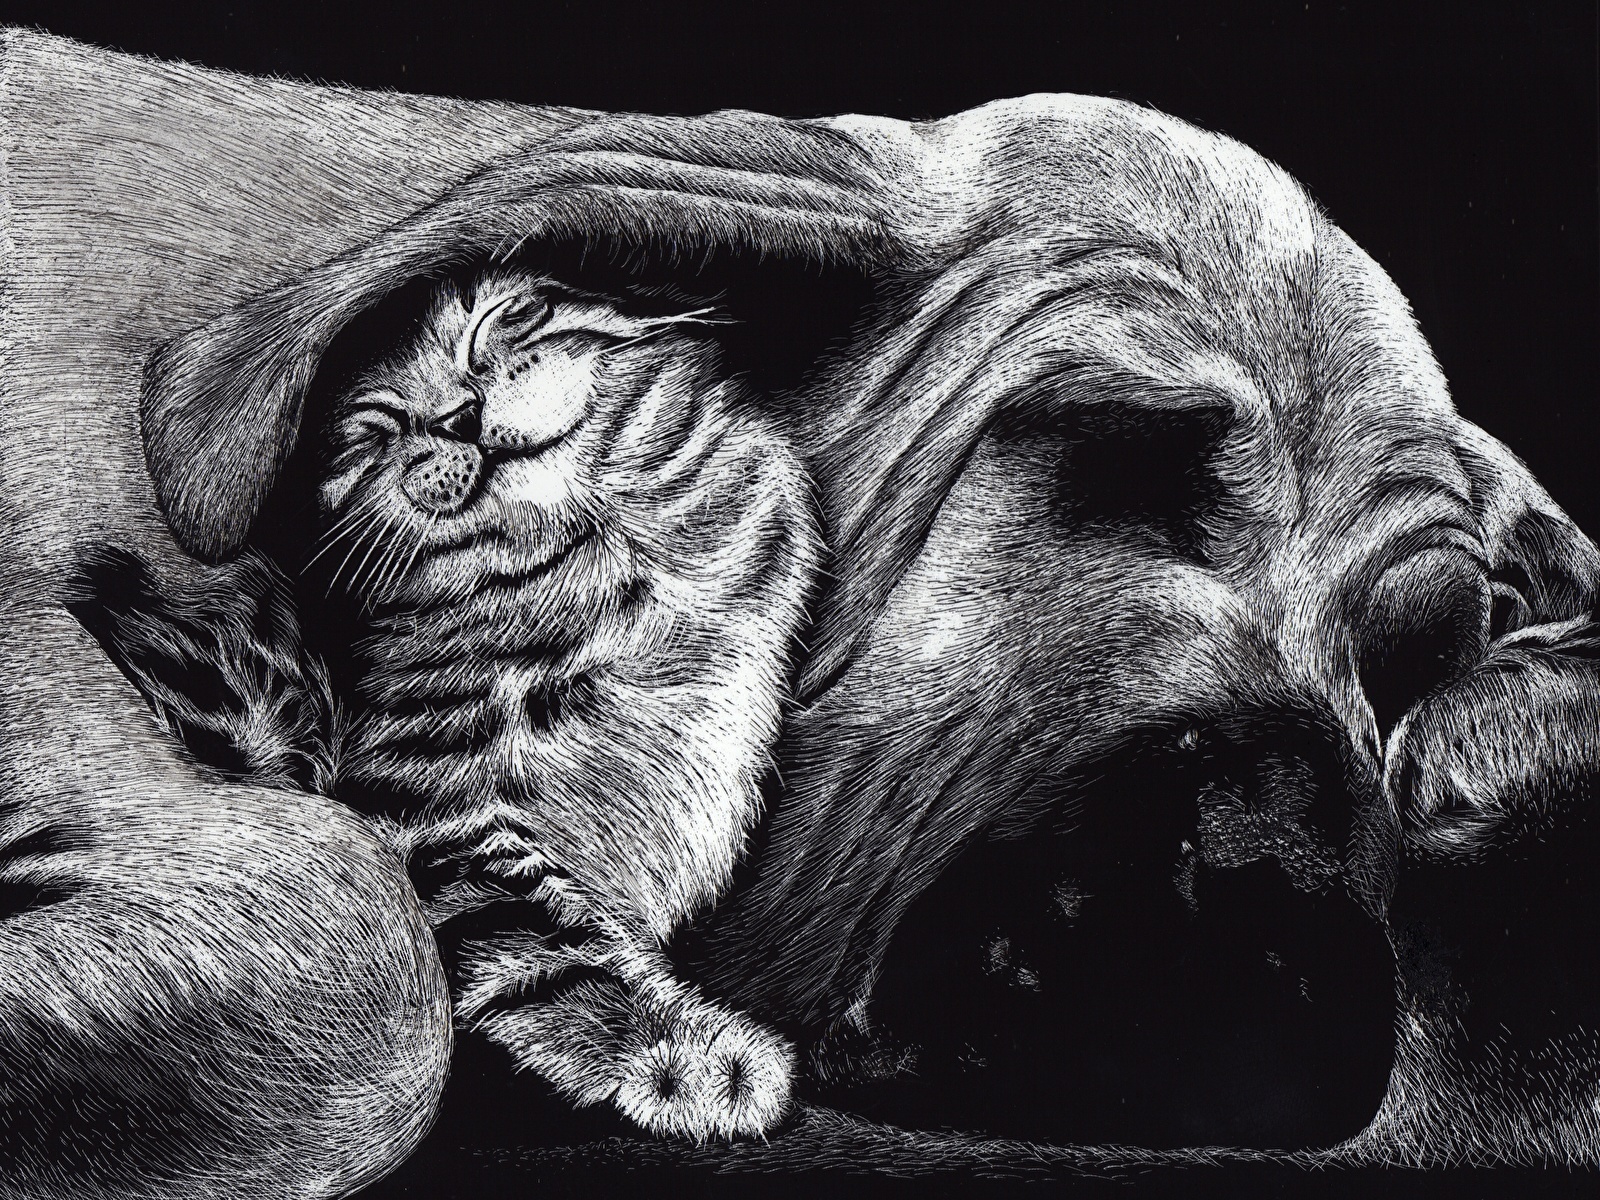 壁紙 1600x10 描かれた壁紙 イヌ 飼い猫 Friends 白黒 2 二つ 眠る おもしろい 動物 ダウンロード 写真